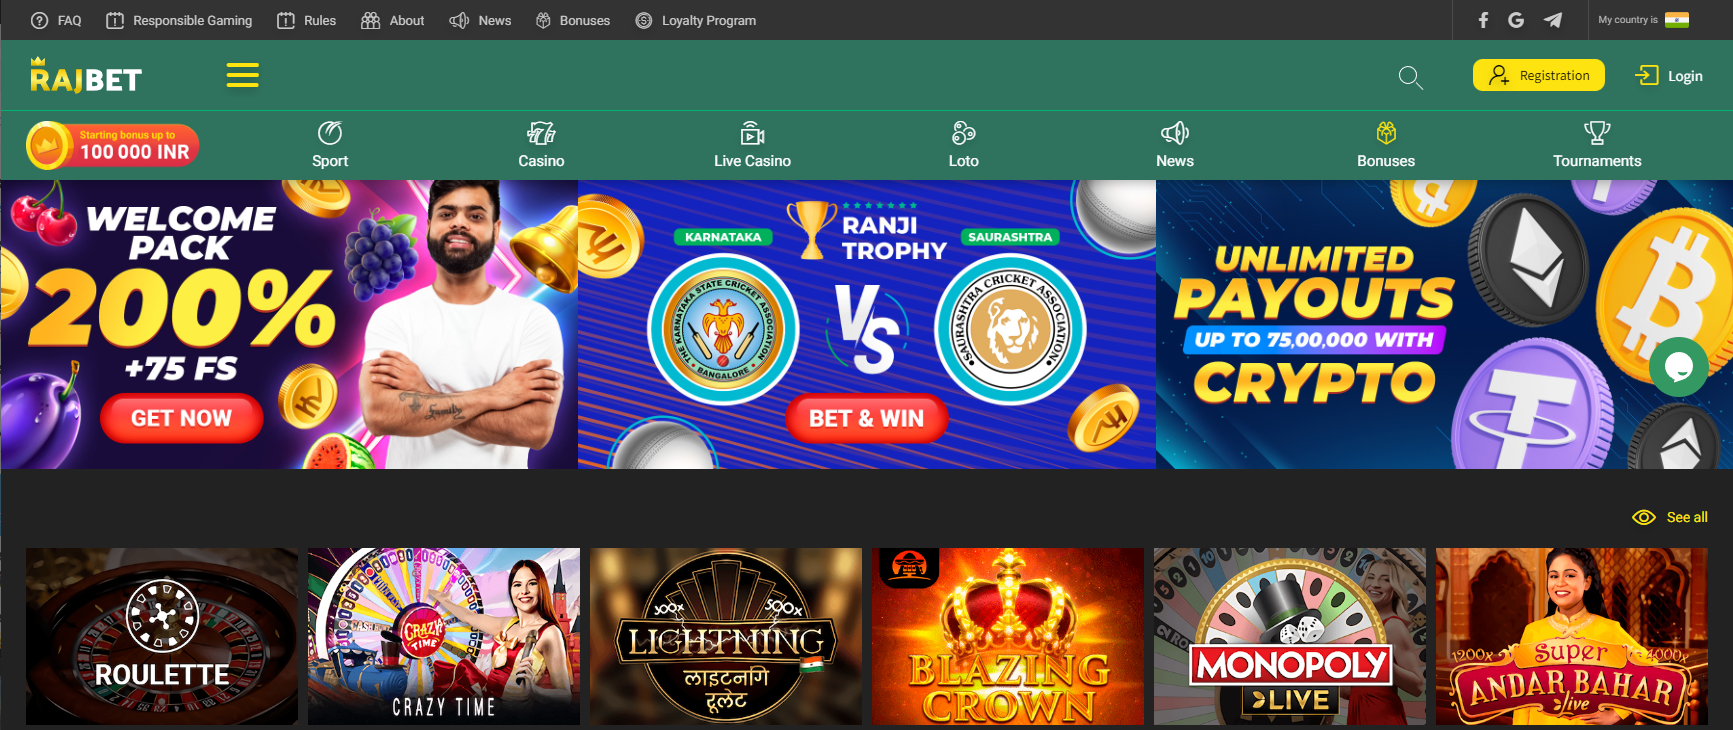 RajBet casino homepage